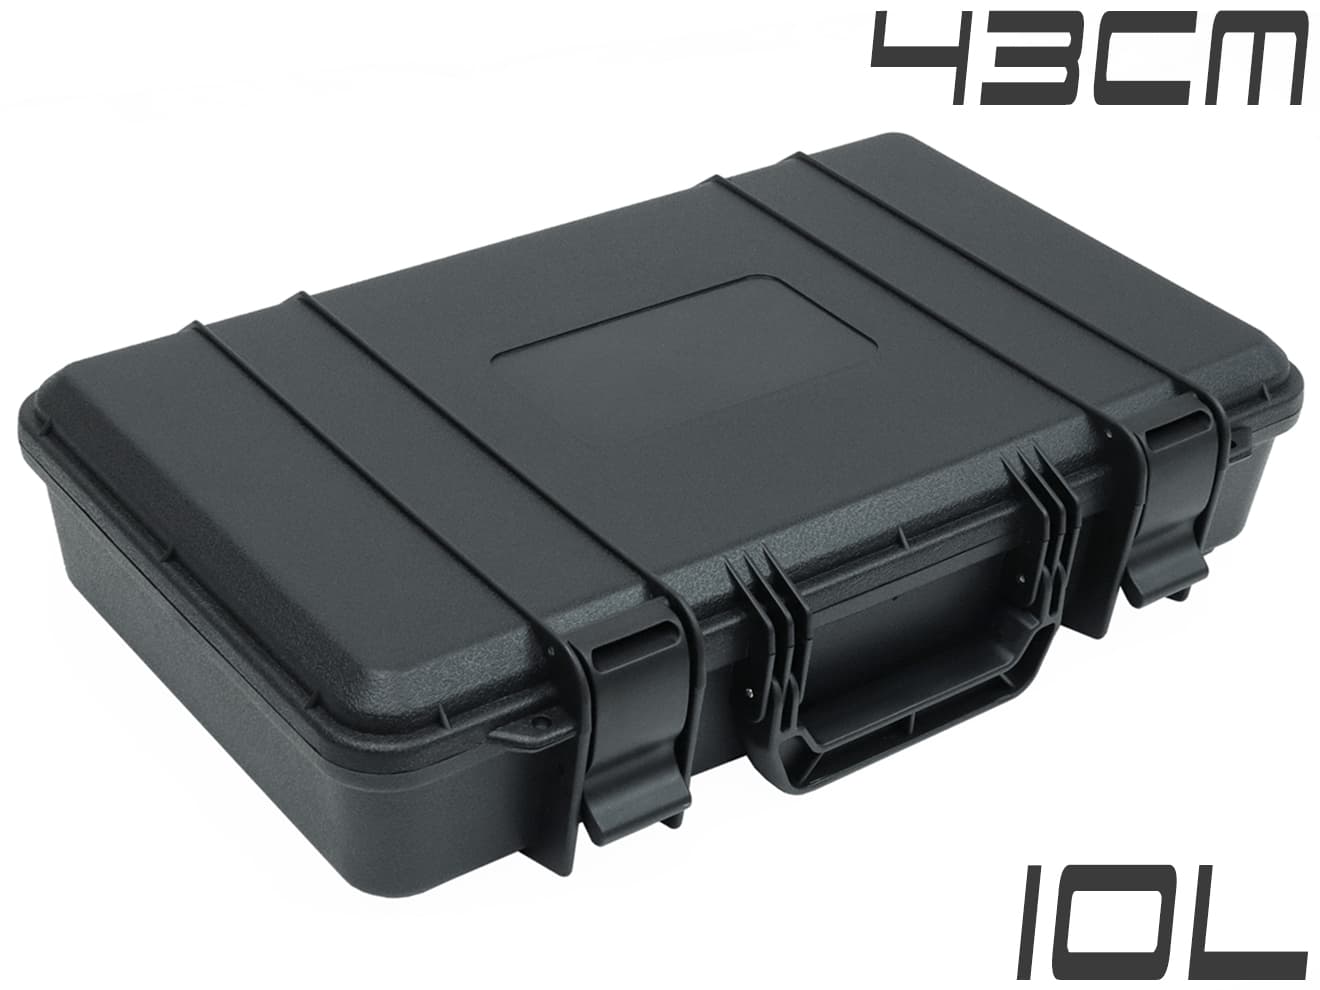 純正品298b015:カーボンファイバー製 ハードケース 防水 磁気 タンク付き バックパック その他